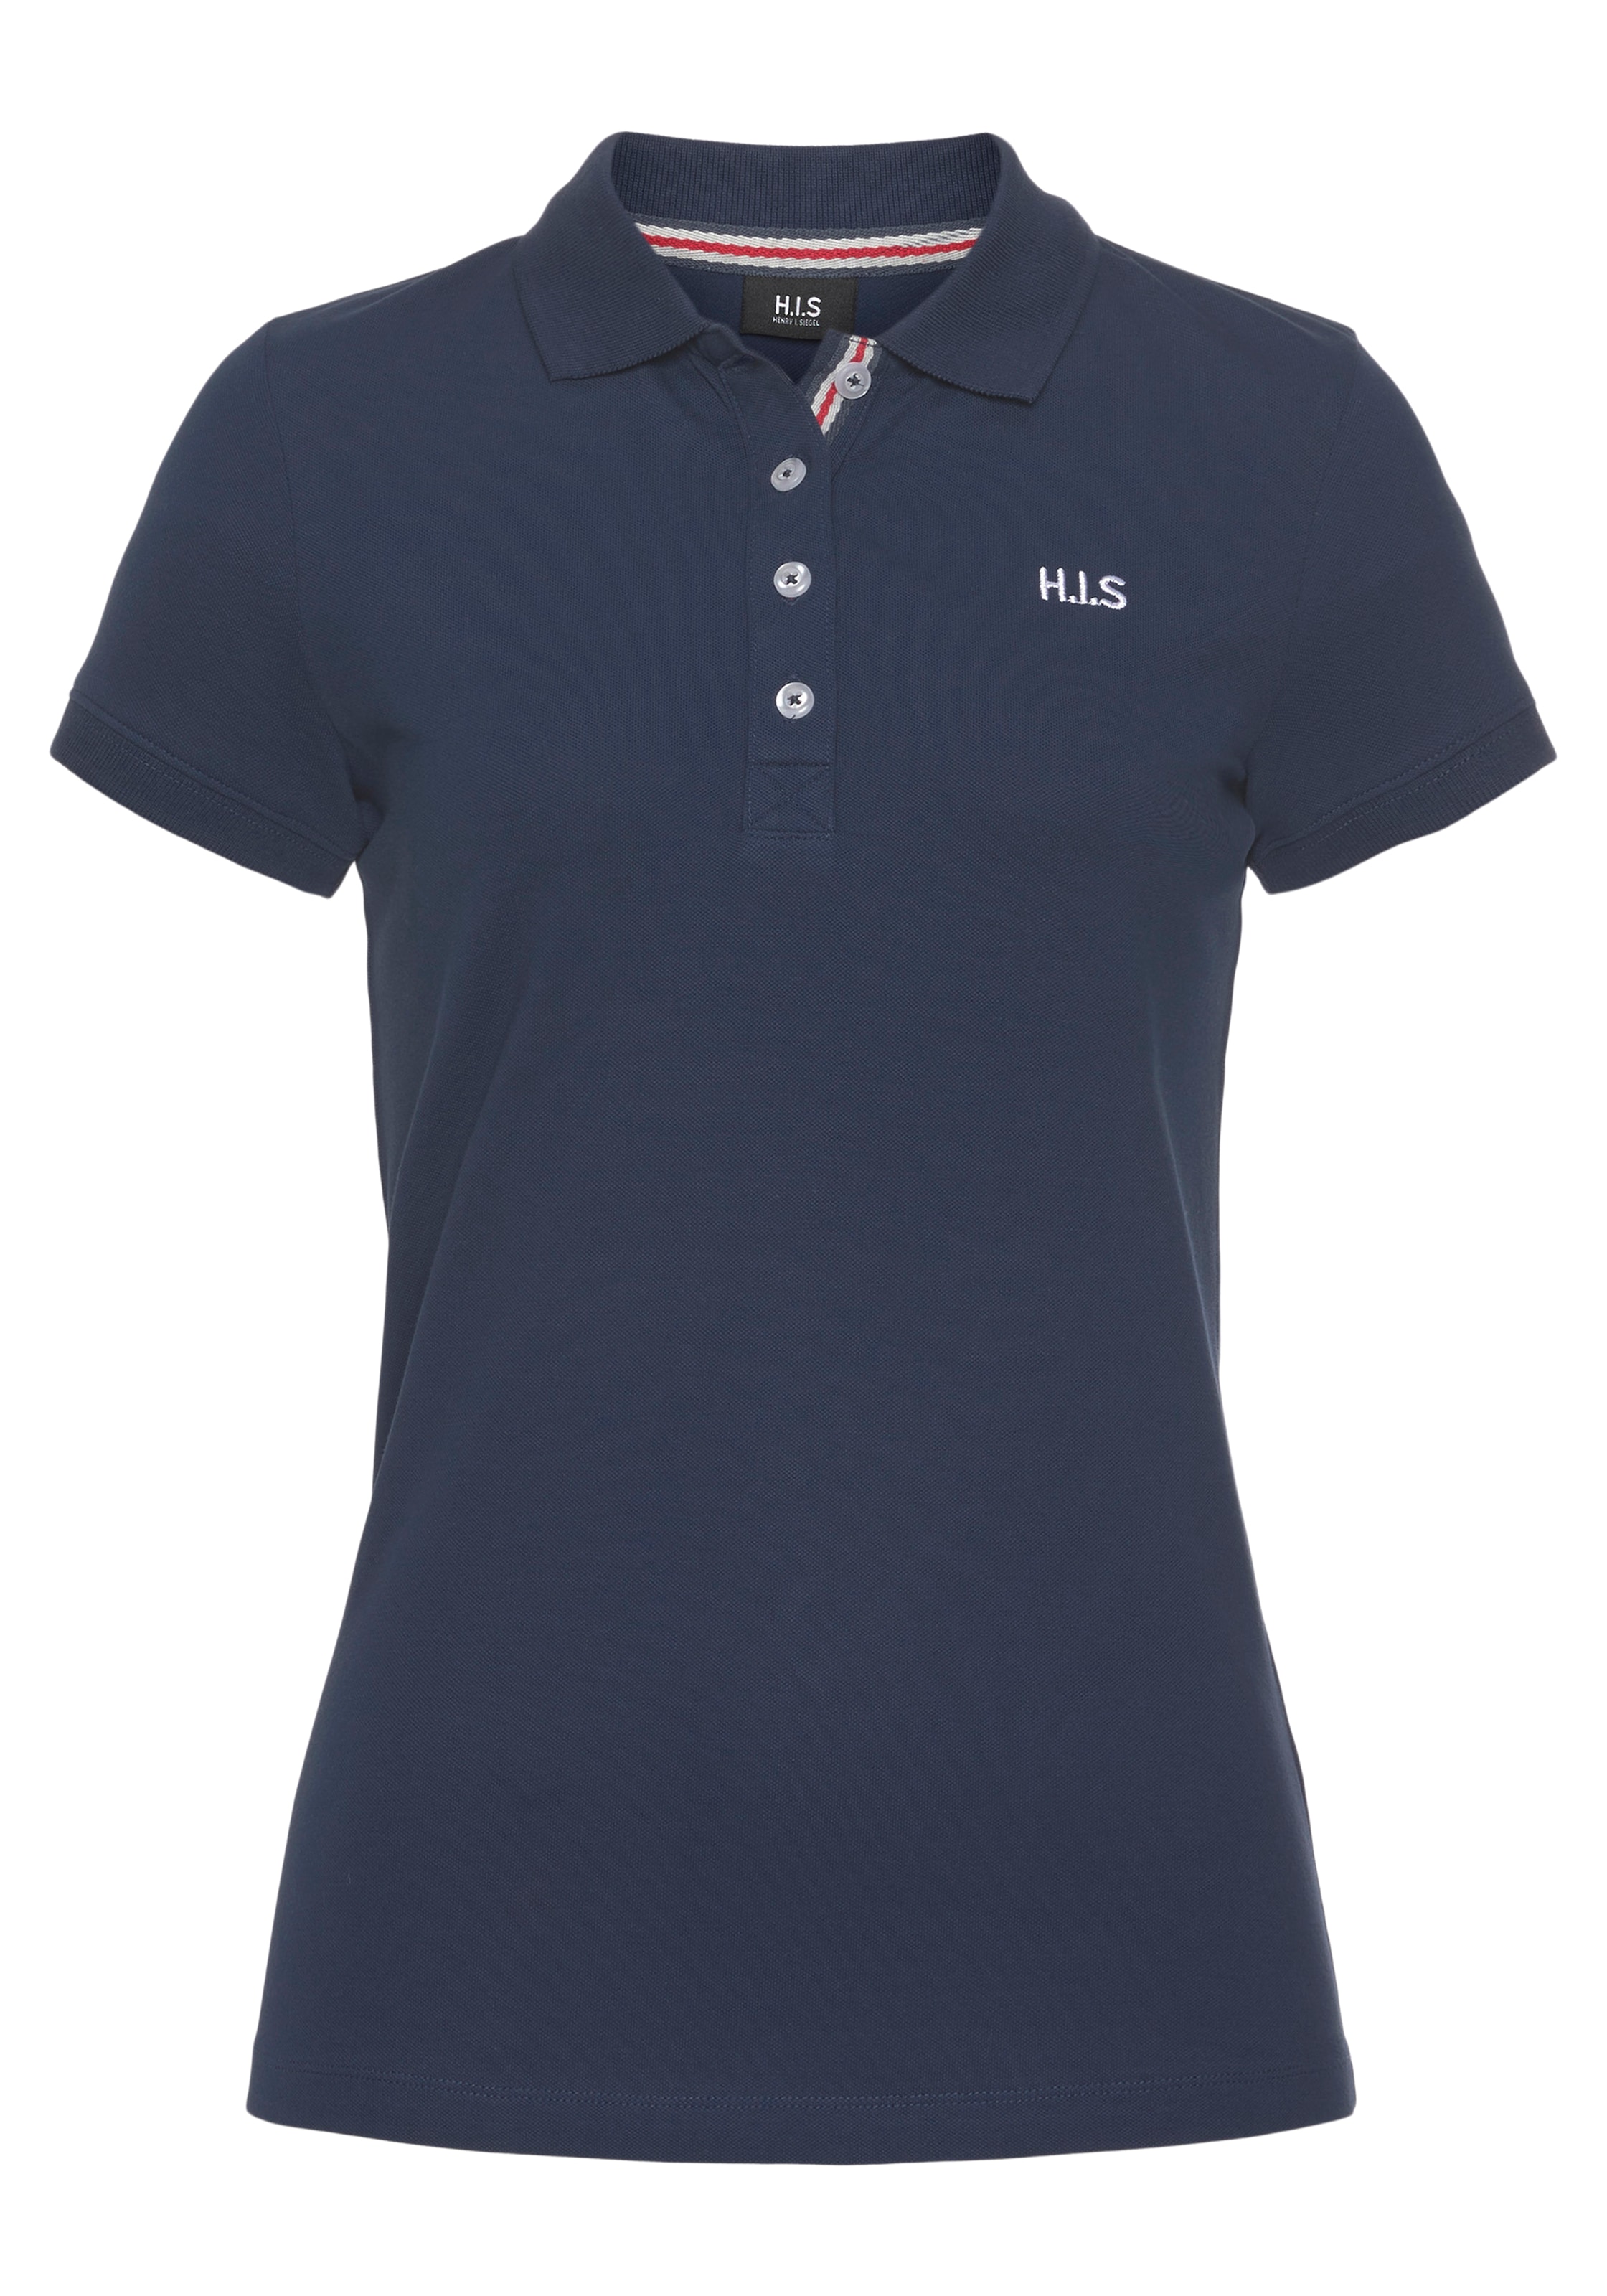 H.I.S Poloshirt, (2er-Pack), aus weicher Online-Shop kaufen Pique-Qualität im